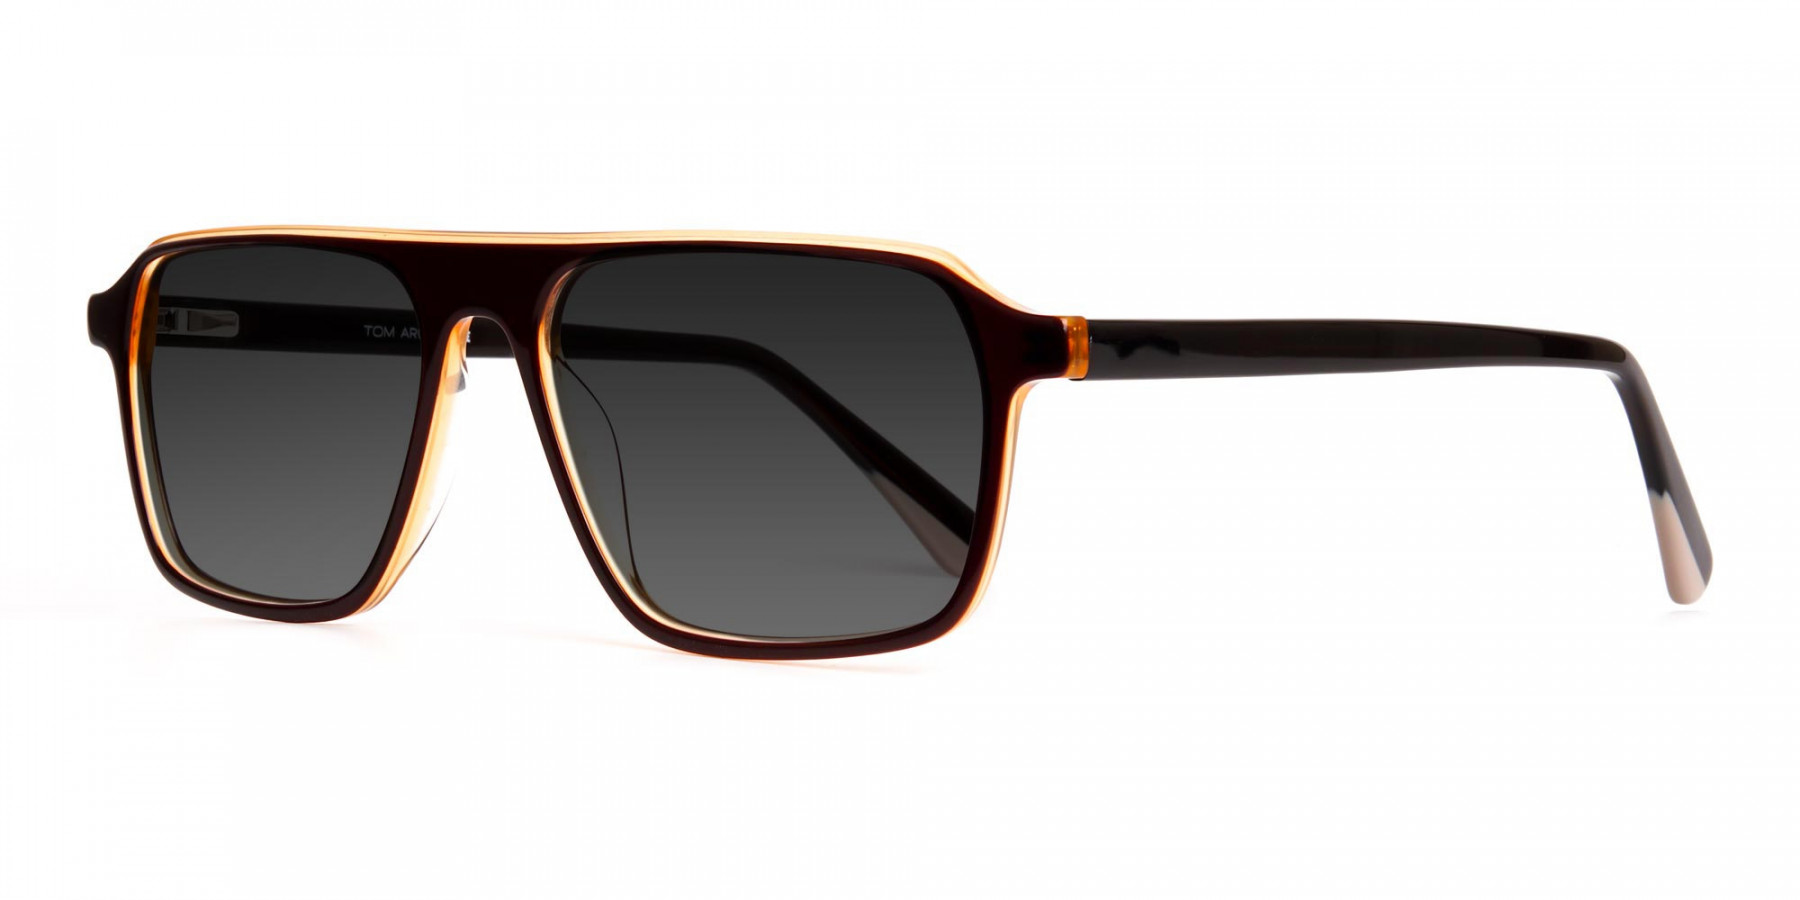 dark-brown-rectangular-full-rim-dark-grey-tinted-sunglasses-frames-1